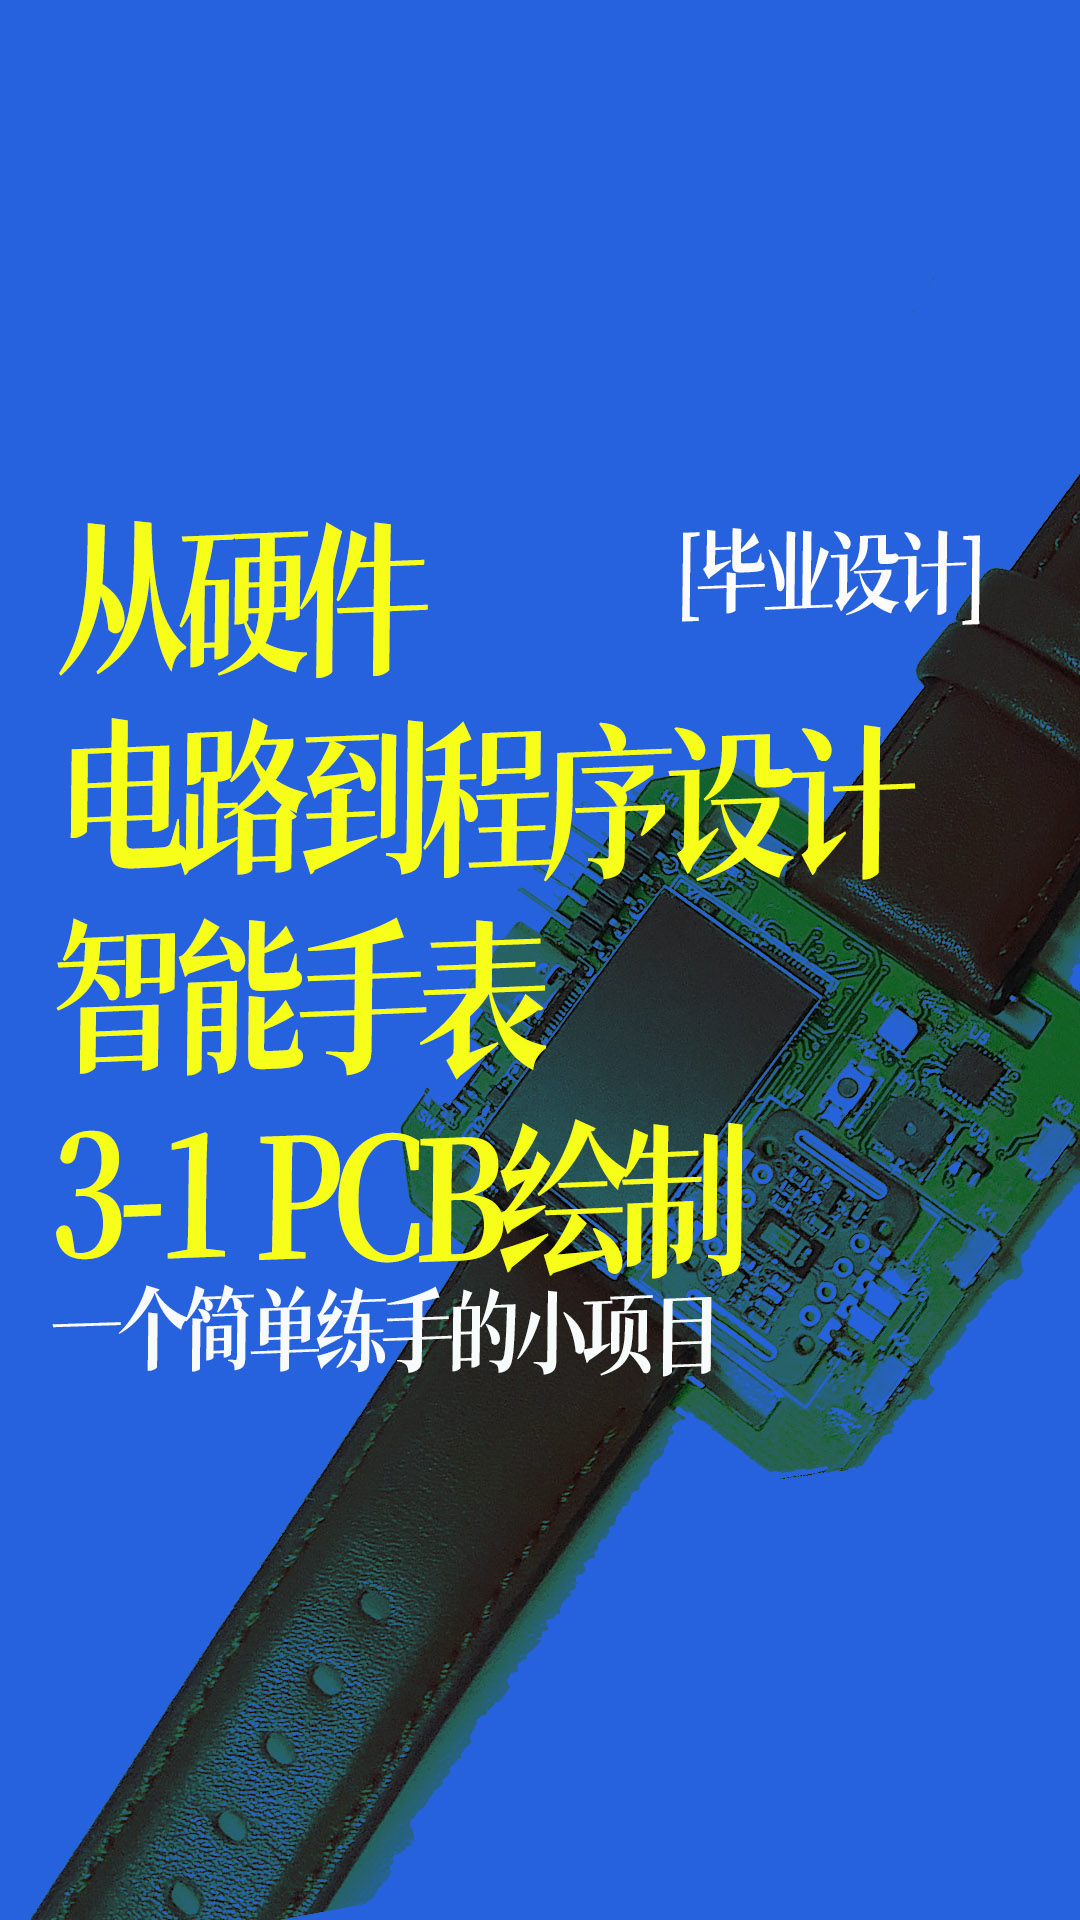 【从硬件电路到程序设计】 智能手表 PCB绘制 3-1